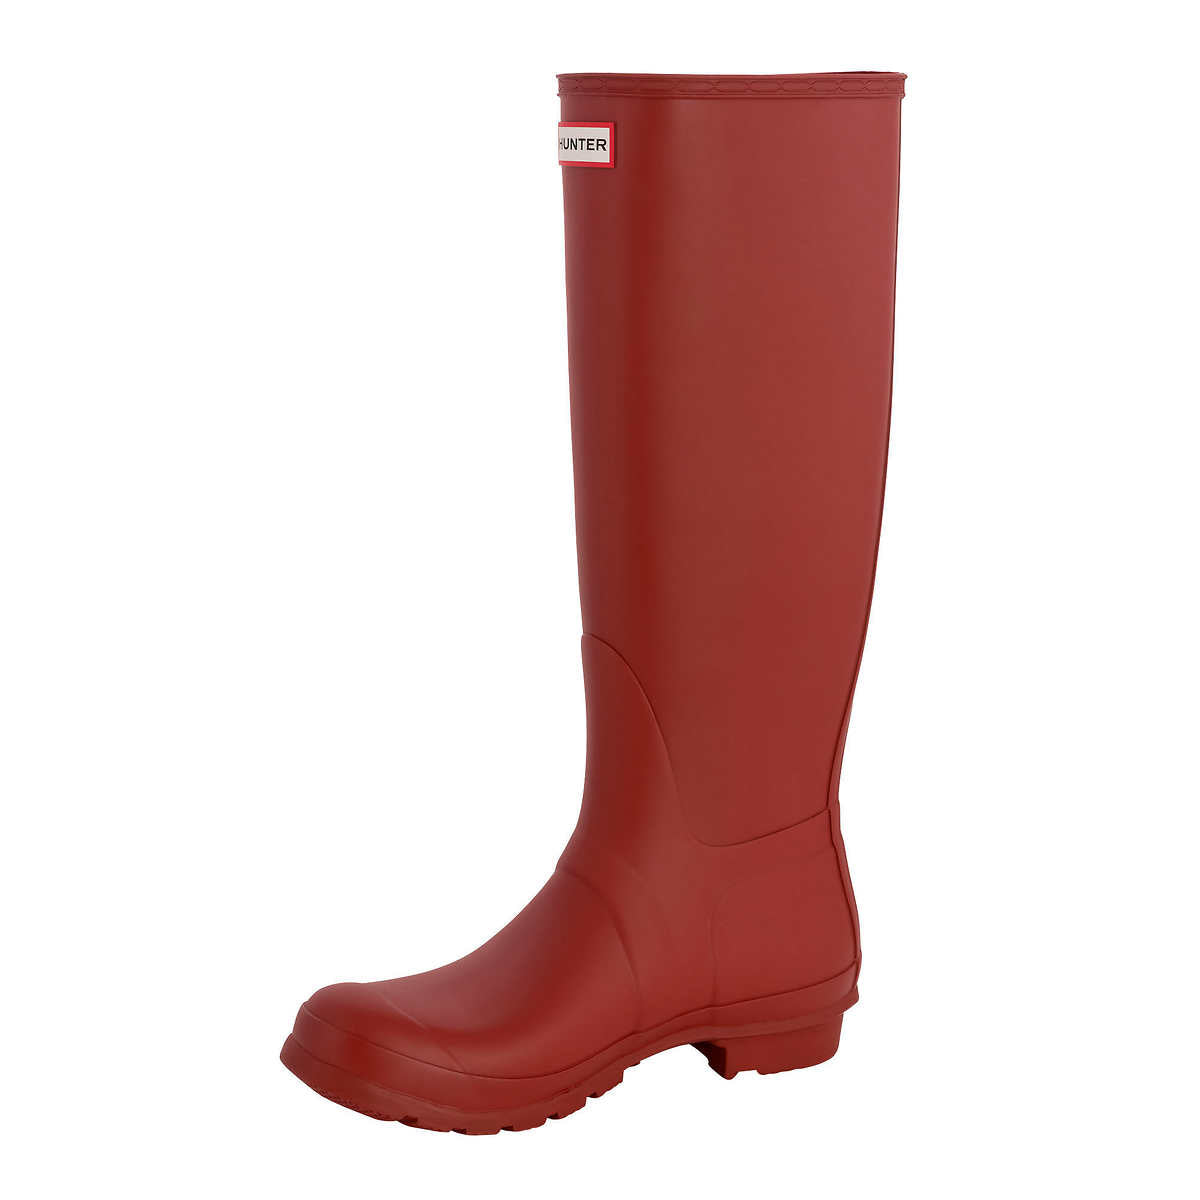 hunter-bottes-hautes-caoutchouc-original-pour-femme-women-boots-rouge-military-red-3